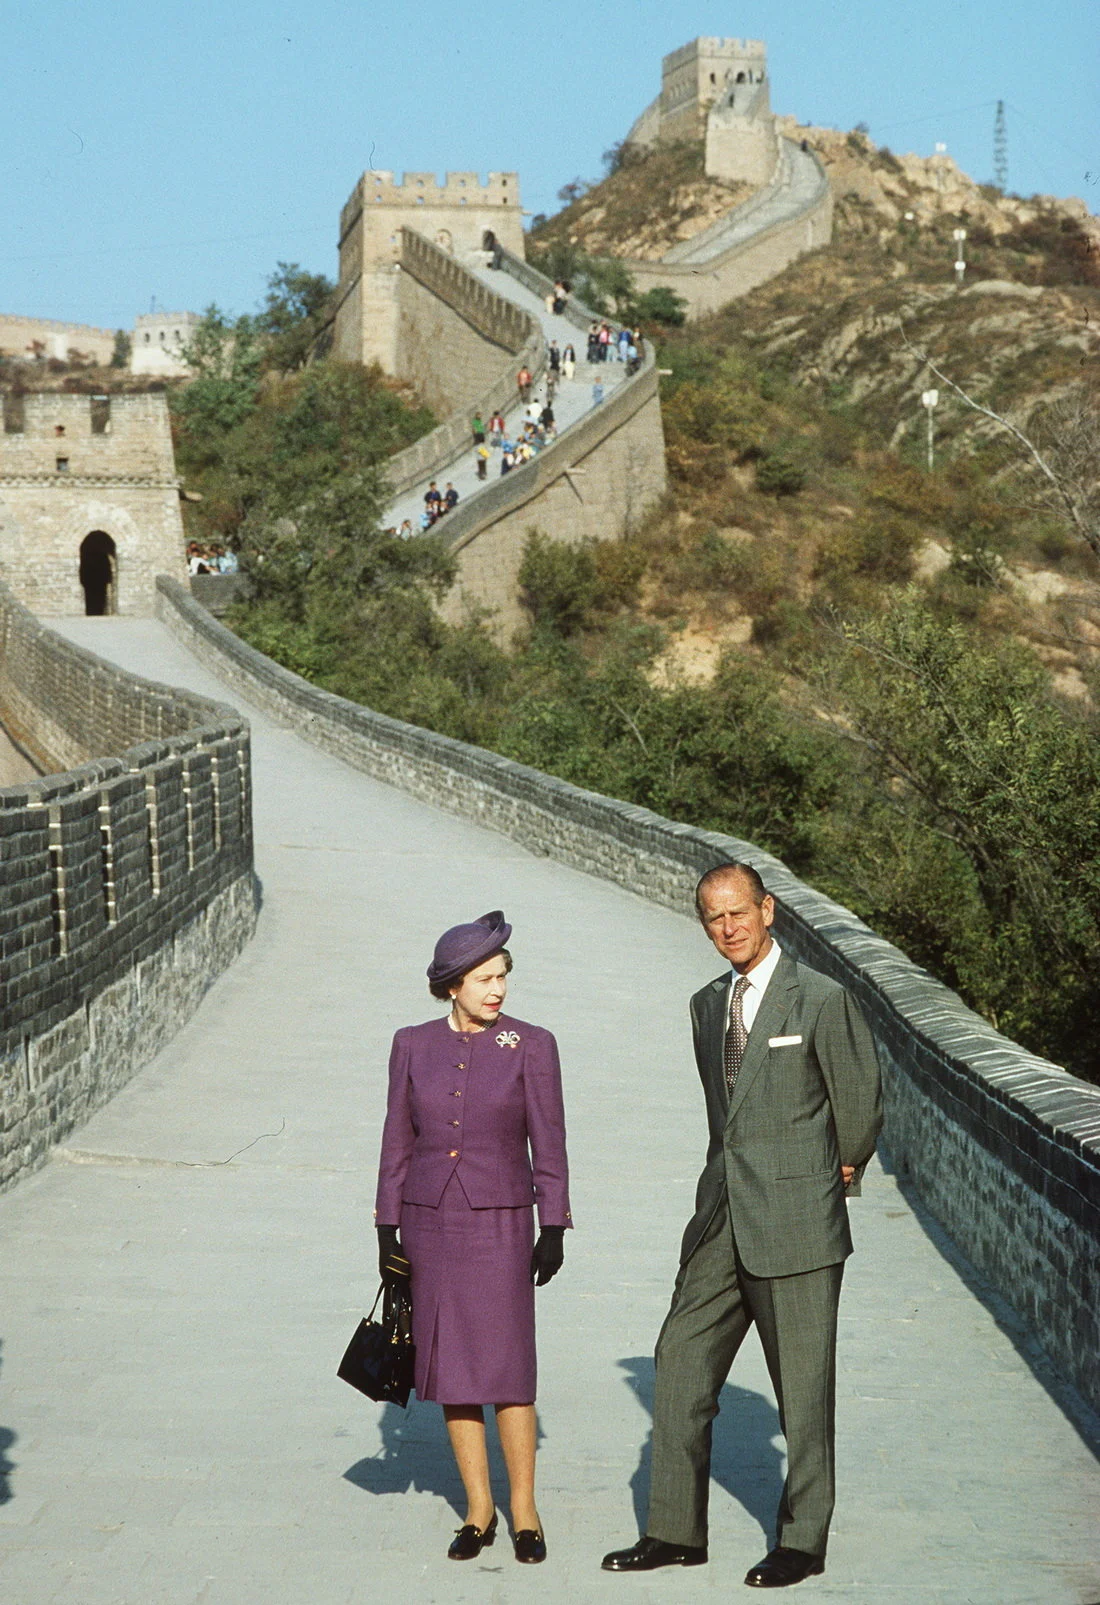 1986年，英国女王伊丽莎白二世和菲利普亲王访问中国时 , 在长城合影。伊丽莎白二世是英国历史上第一位来华访问的英国元首。离开北京以后又到访了上海、西安、昆明和广州，然后前往香港。